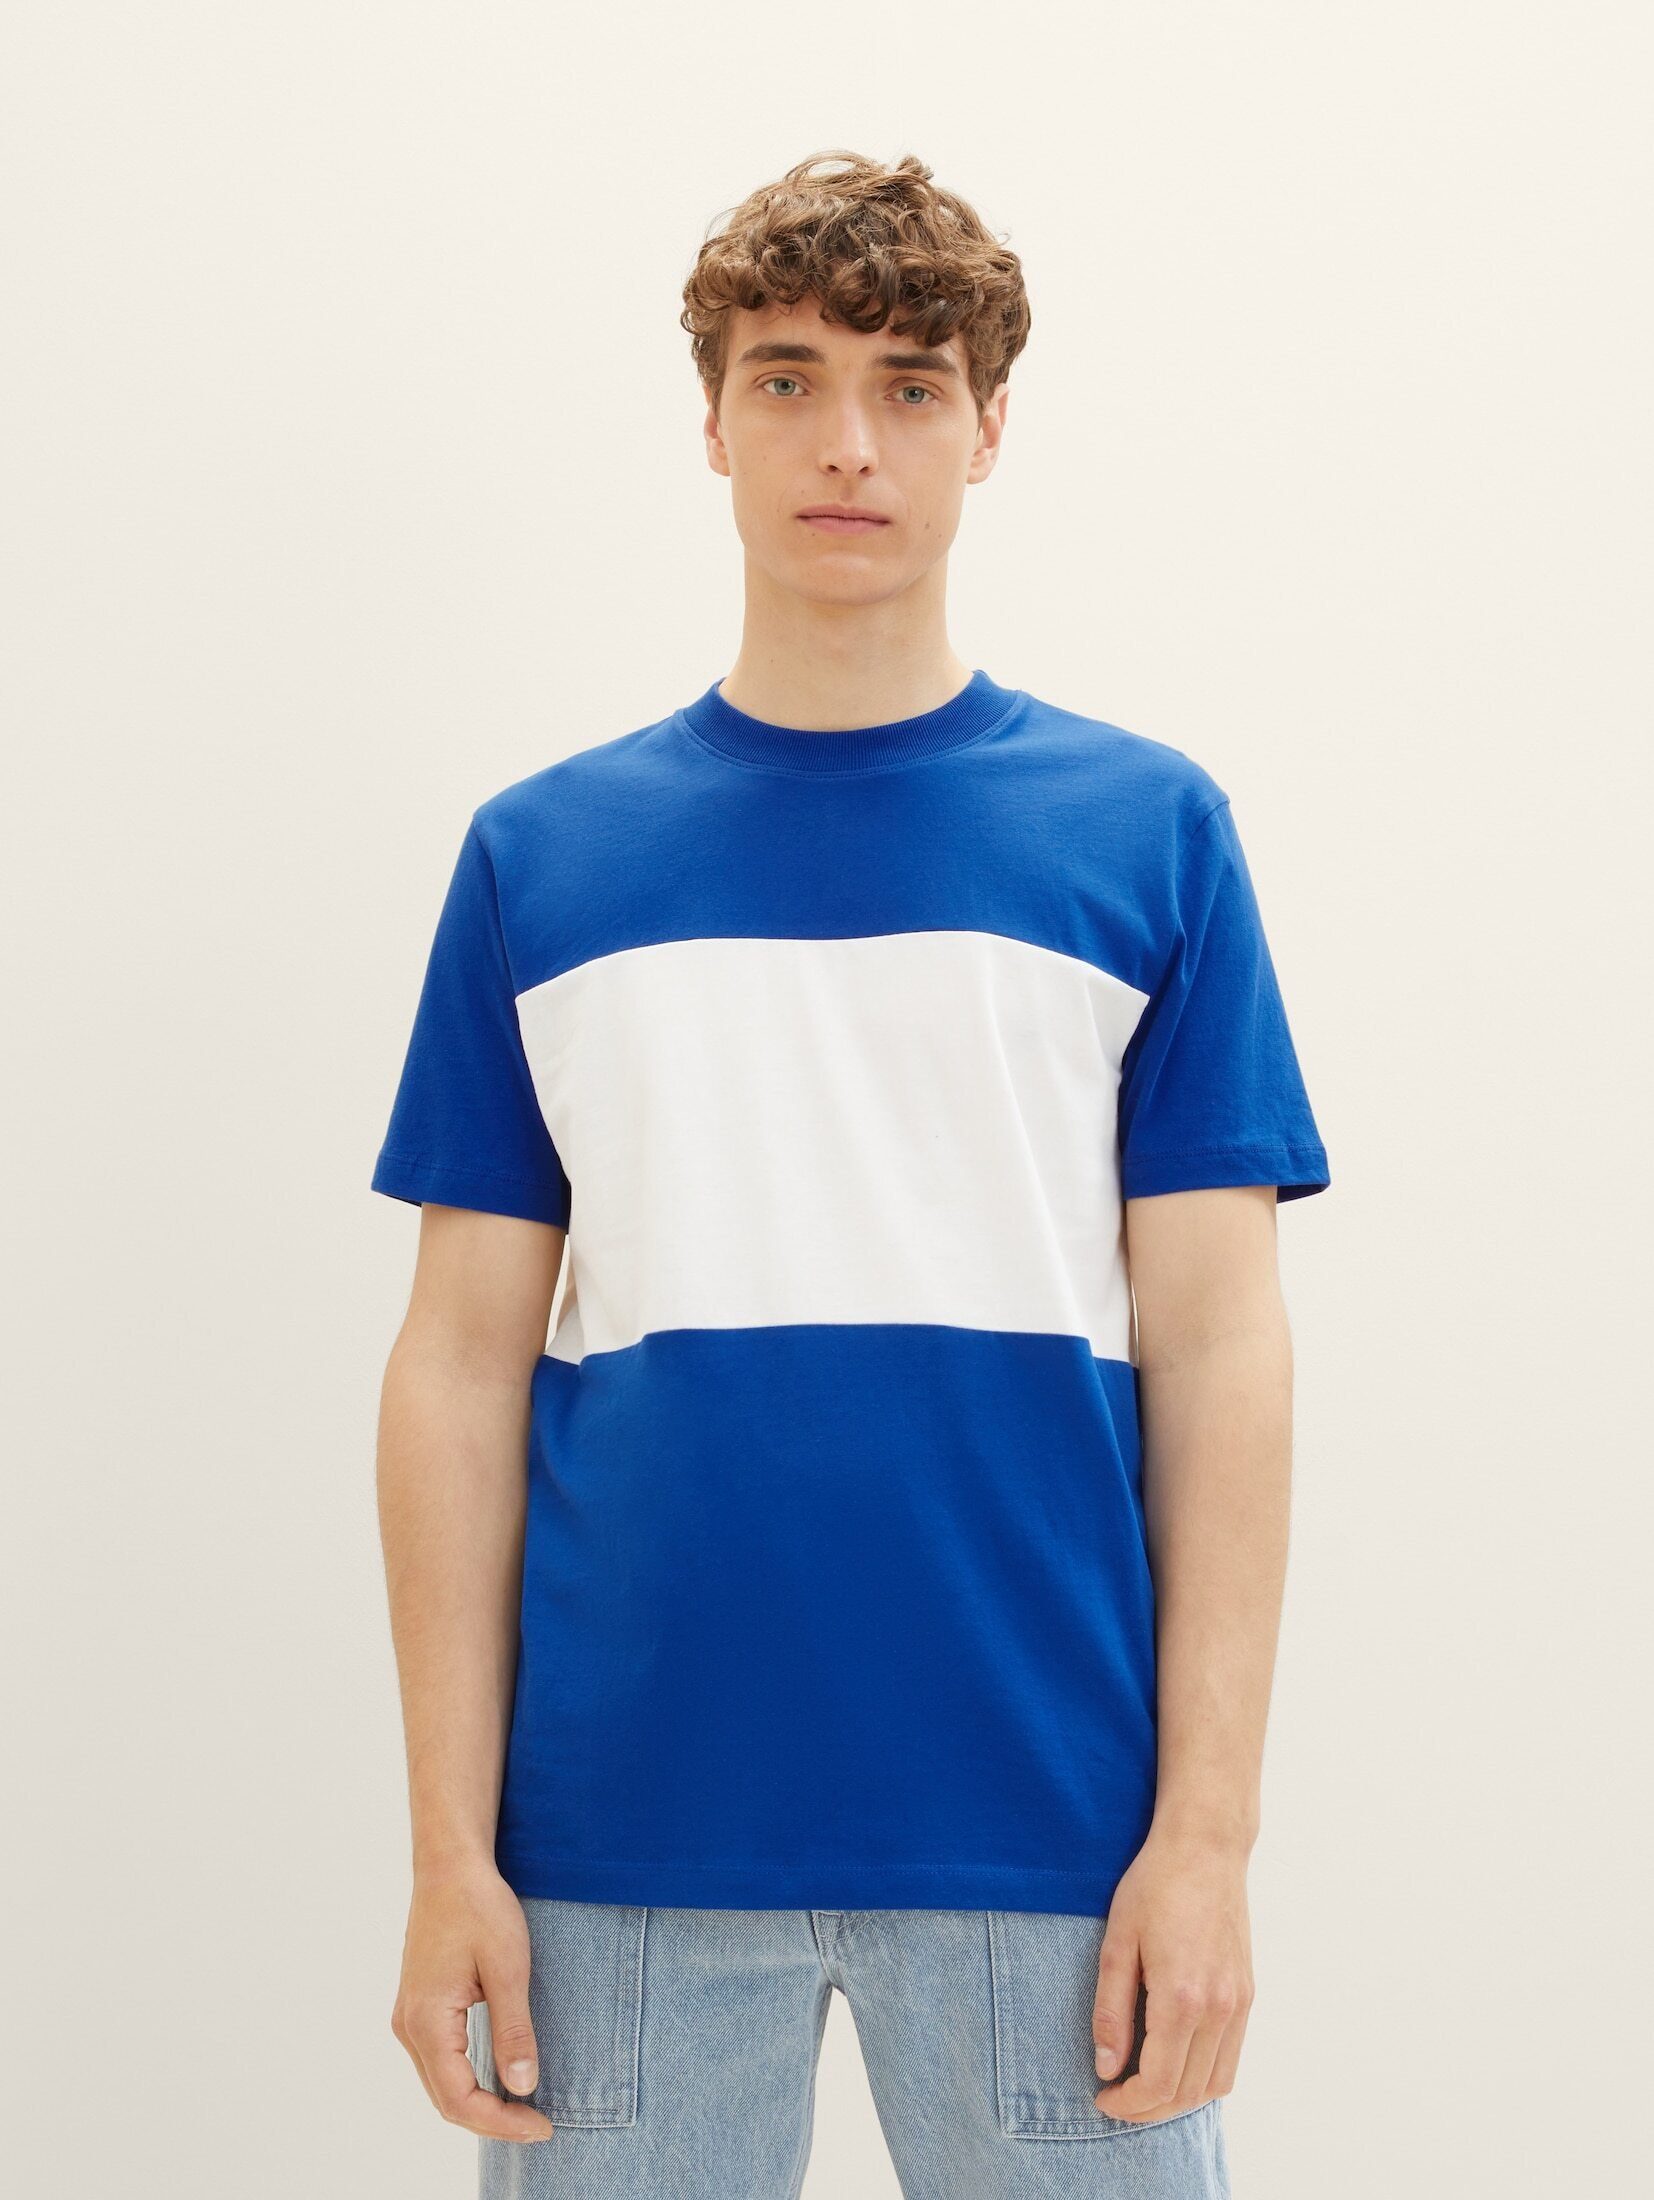 TOM TAILOR Denim T-Shirt Cutline T-Shirt shiny royal blue